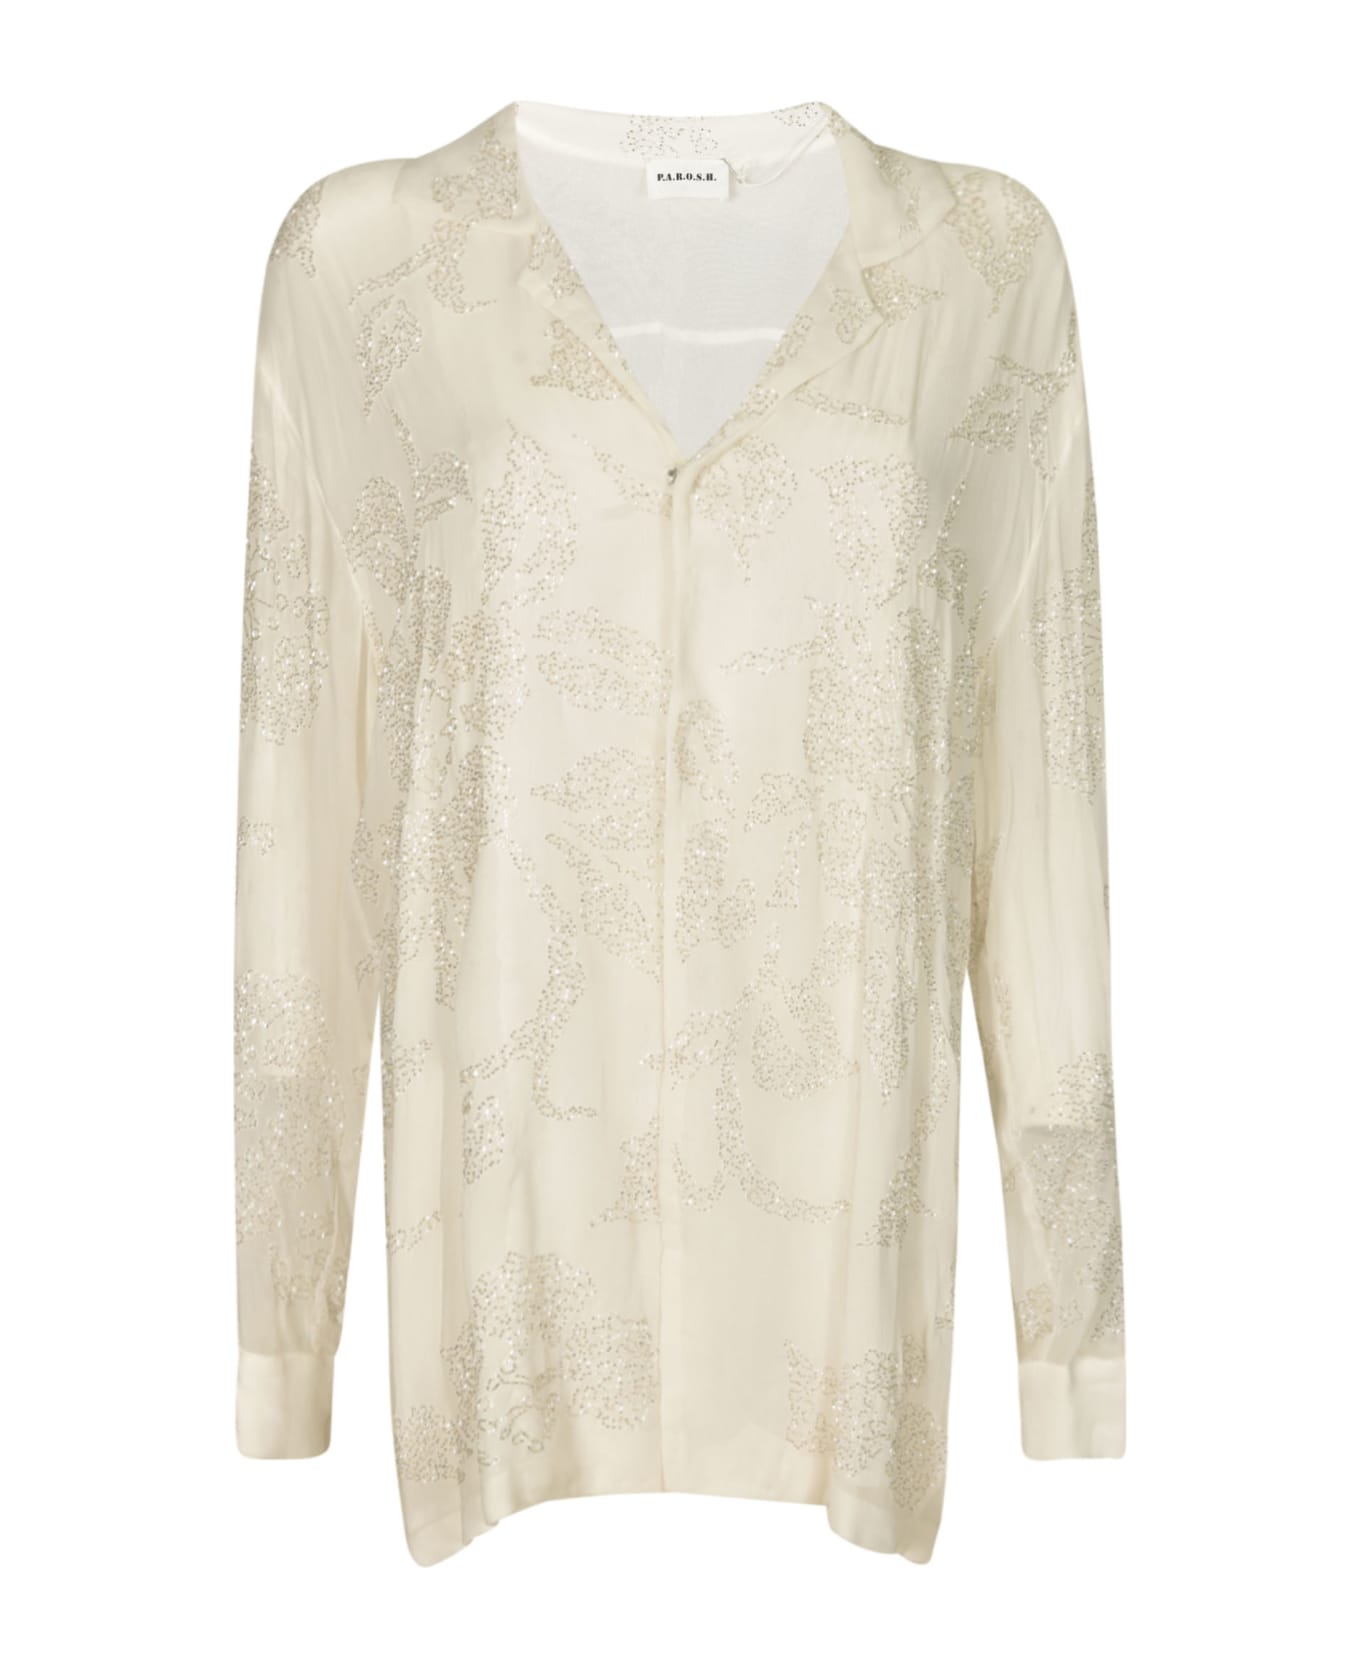 Parosh Glittery Shirt - White